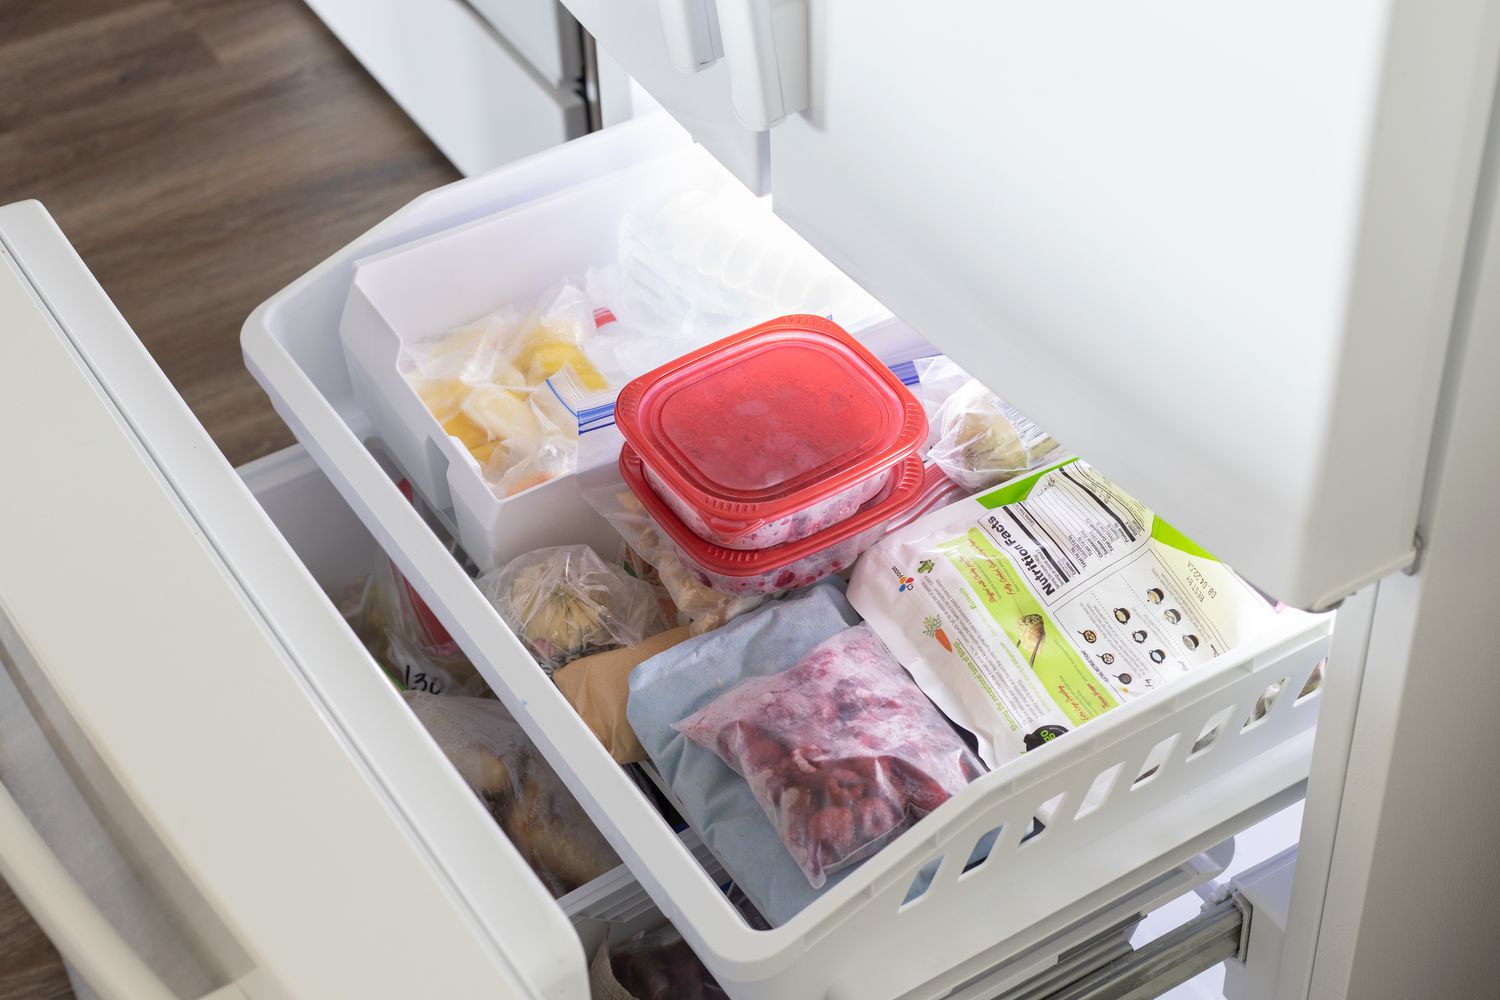 Freezer cheio de alimentos e recipientes congelados para reduzir a conta de luz